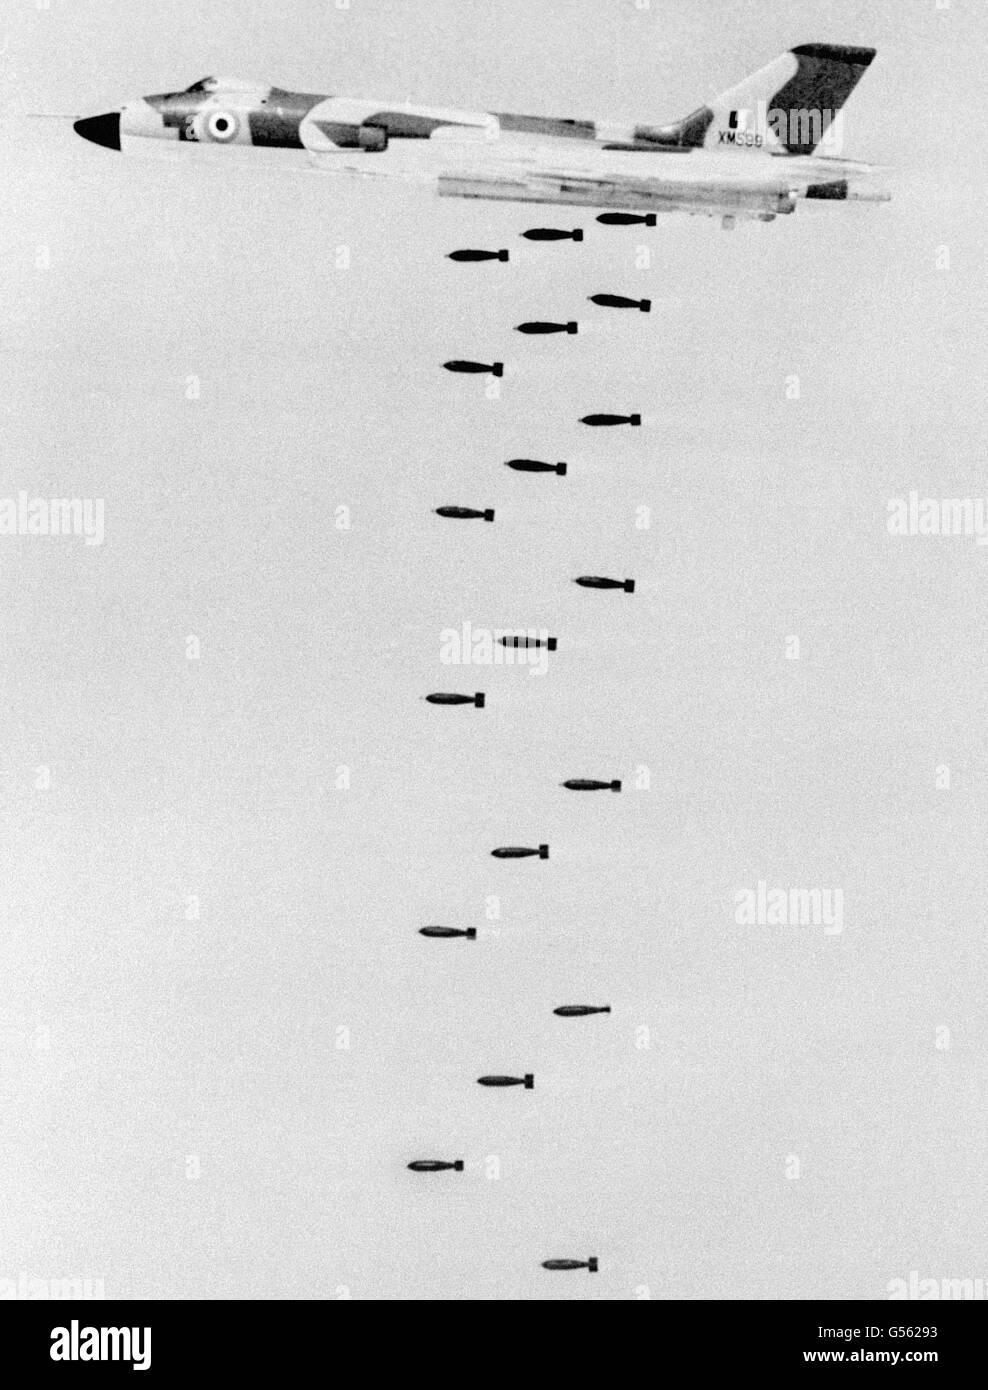 Un'immagine di allenamento di un Avro Vulcan, il primo bombardiere strategico al mondo con configurazione ad ala delta, capace di trasportare 21 bombe su una notevole portata e di attaccare con precisione di notte o in qualsiasi condizione meteorologica da basso livello. I jet Vulcan e Sea Harrier hanno bombardato con successo la pista portuale Stanley, Falkland Islands, in due attacchi pre-alba. Foto Stock